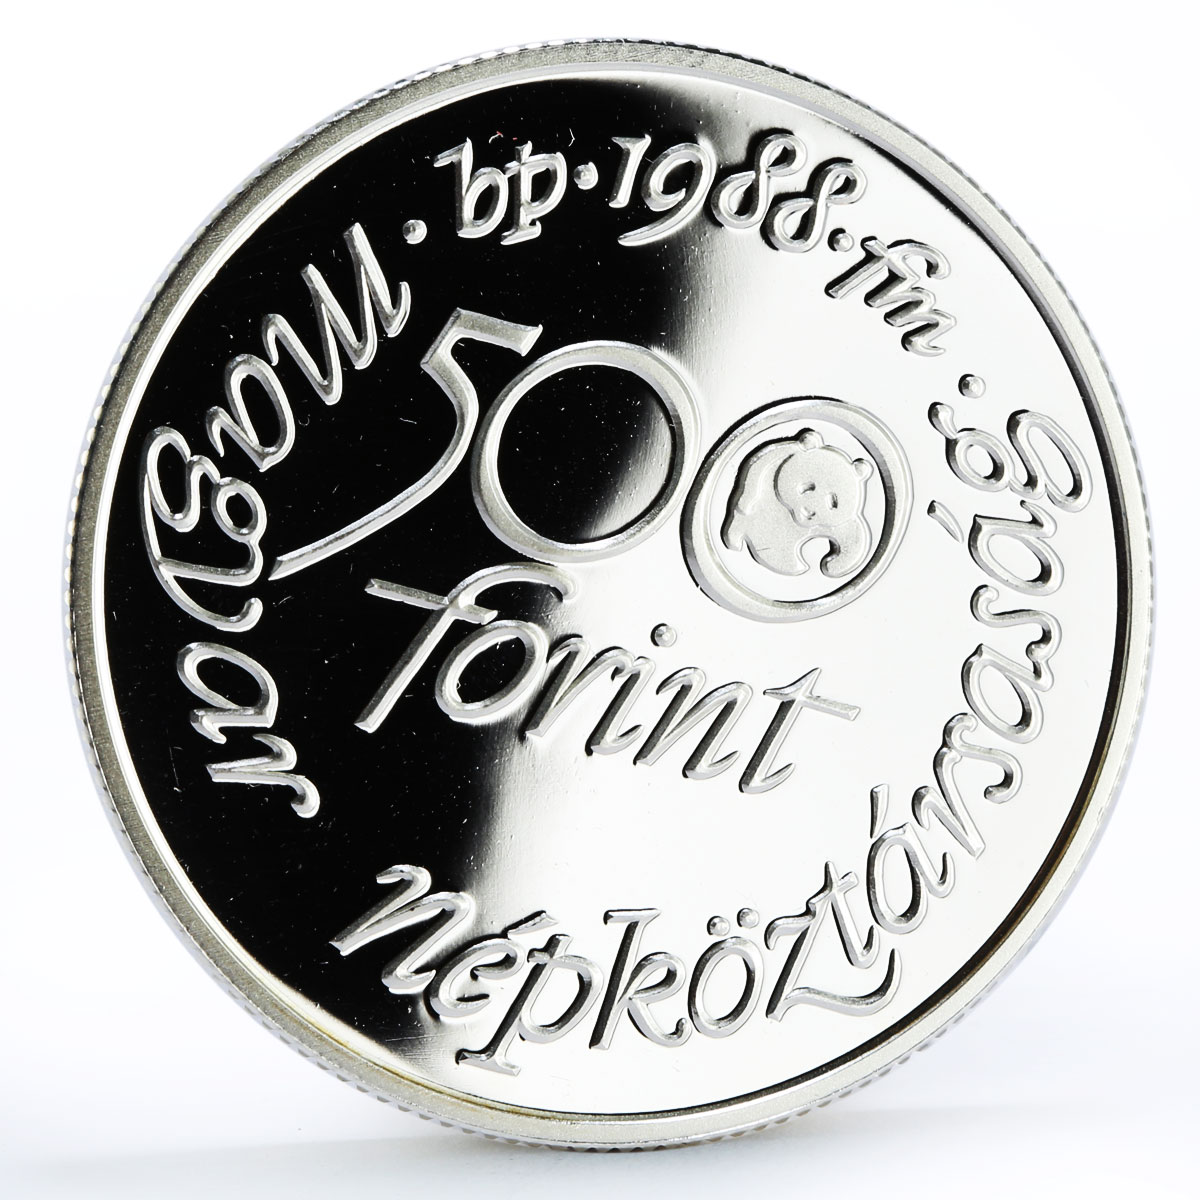 Hungary 500 forint World Wildlife Fund Montagu's Harrier Bird silver coin 1988